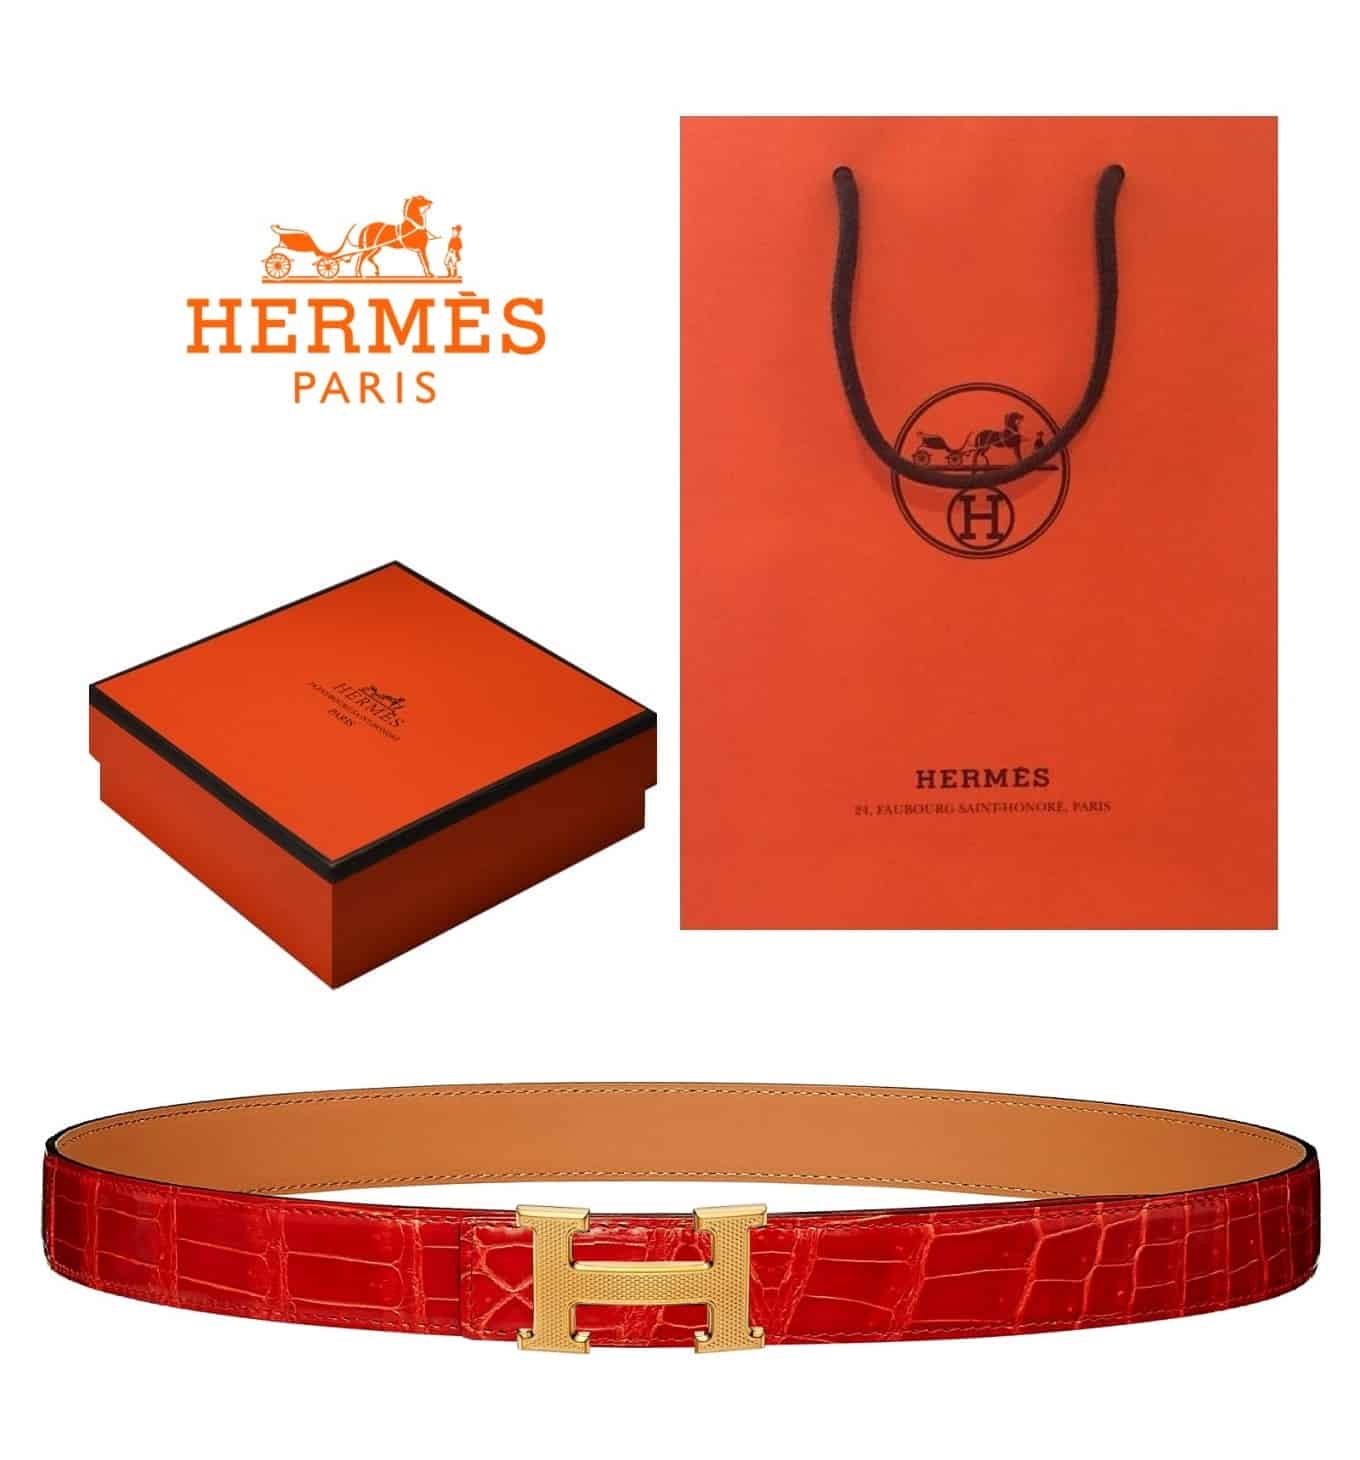 Phụ kiện đi kèm khi chọn thắt lưng cao cấp hiệu Hermes